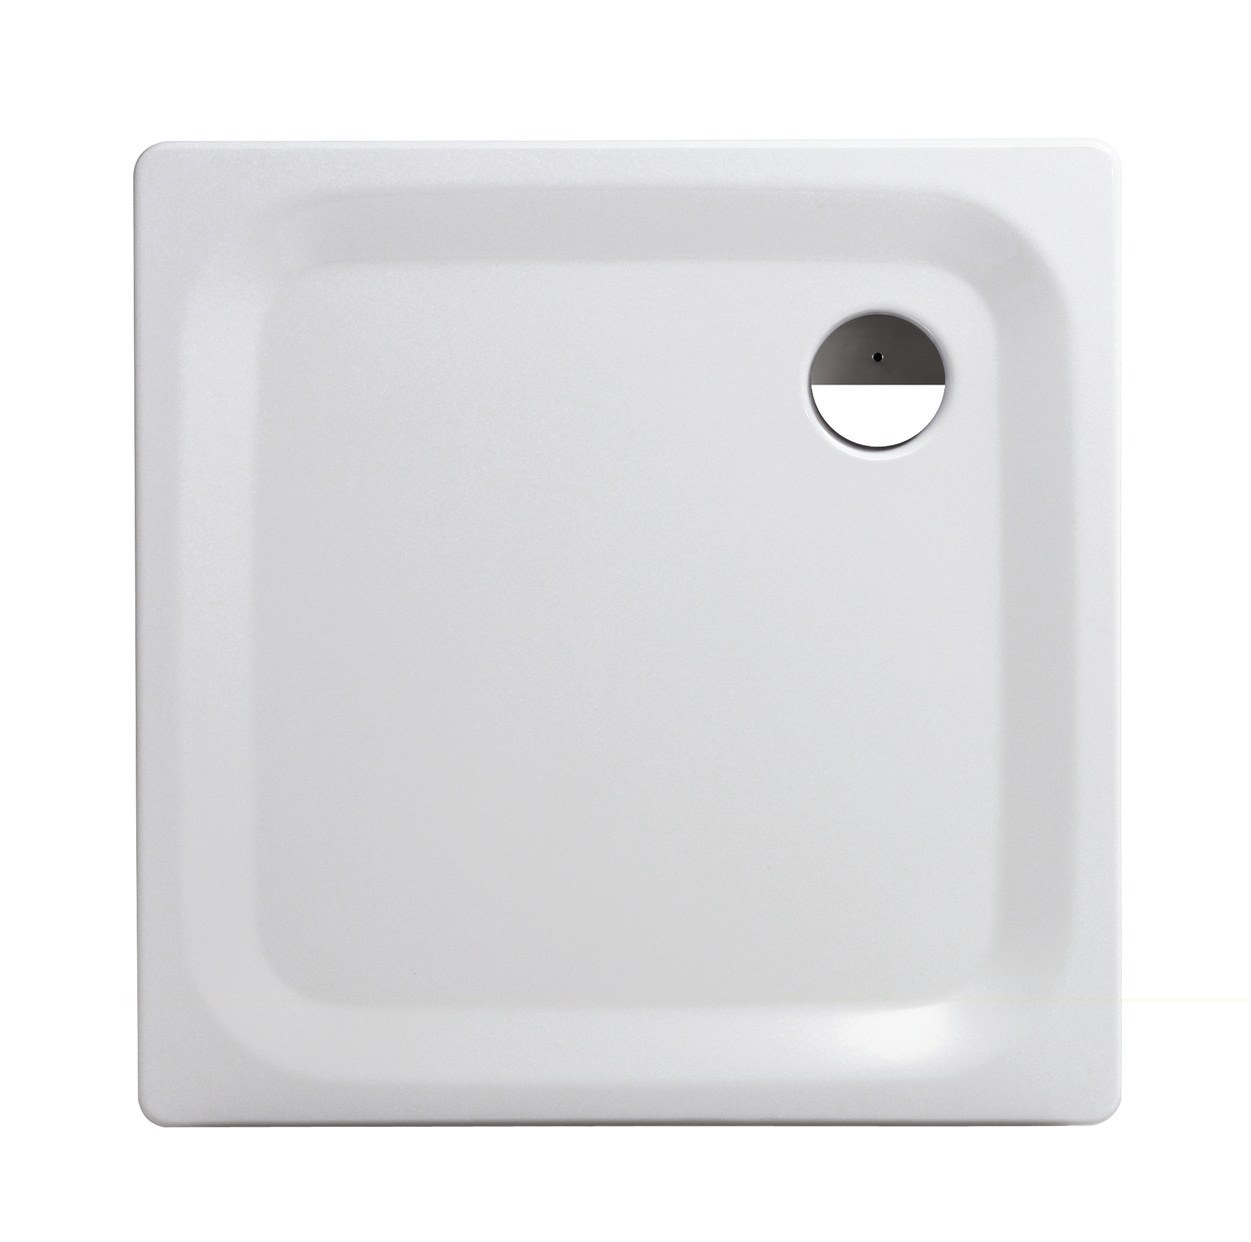 Quadrat-Brausewanne Essential Soft, bodengleiche Stahl-Duschwanne in Weiß, 90 x 90 x 2,5 cm